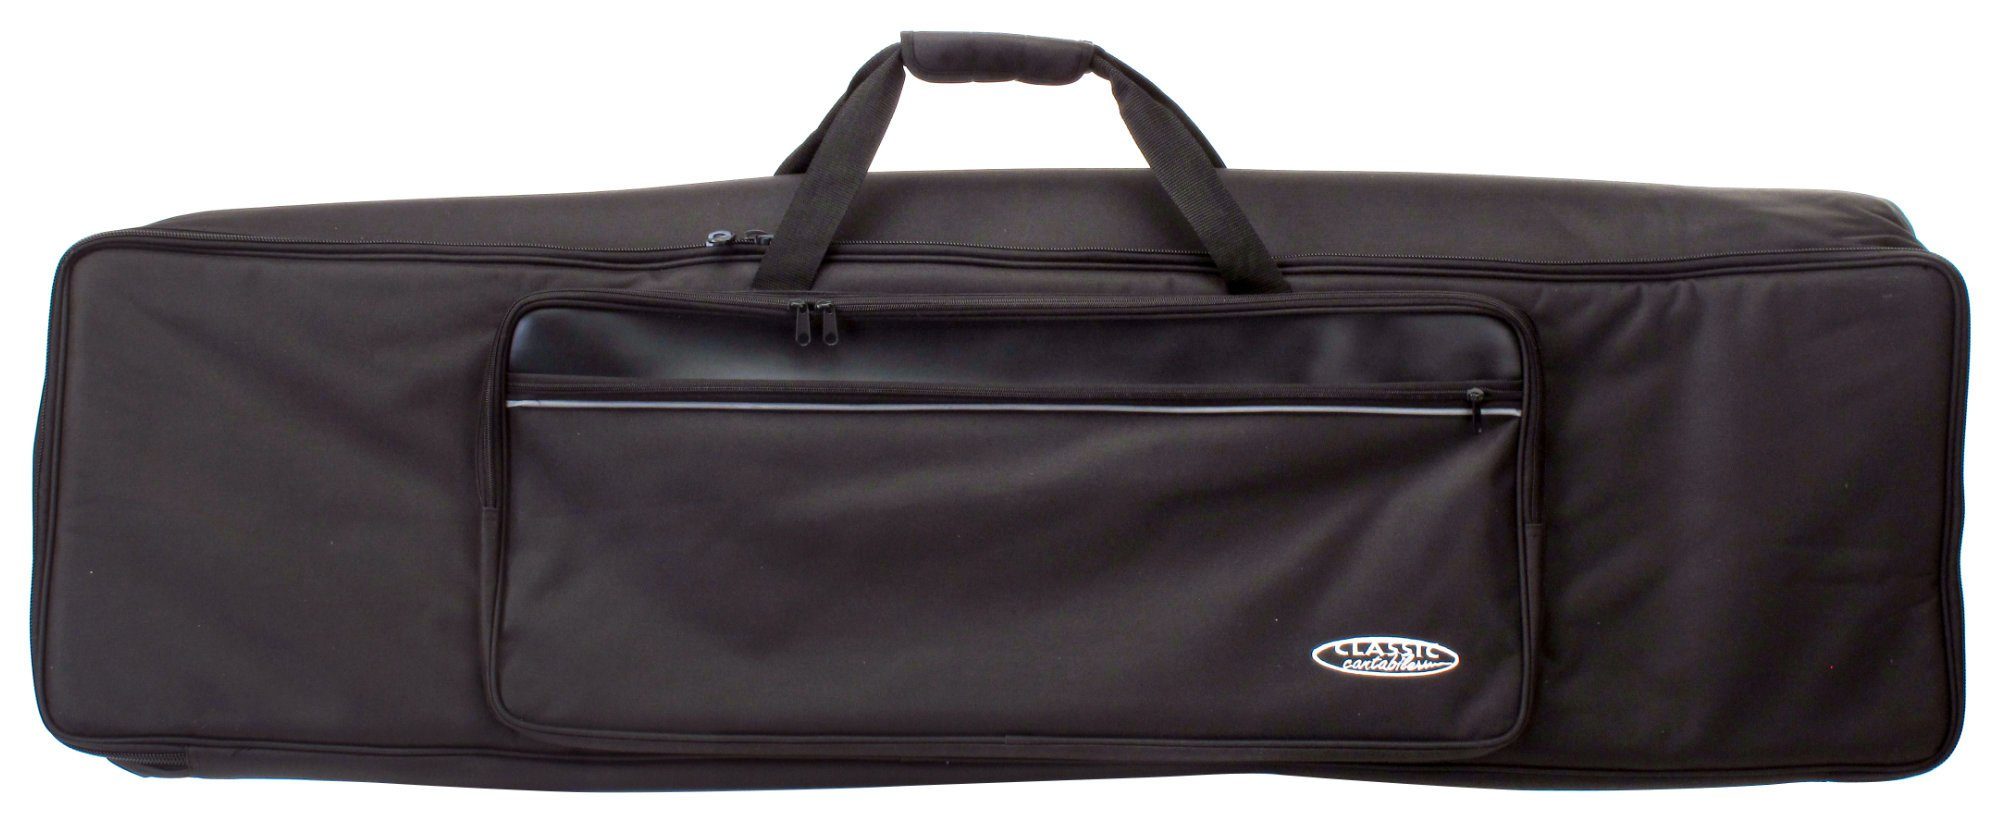 Classic Cantabile Piano-Transporttasche KT-E Keyboardtasche - Innenmaße 128 x 32 x 12 cm, Schaumstoffpolsterung, reiß- und wasserfest mit Rucksackgurte